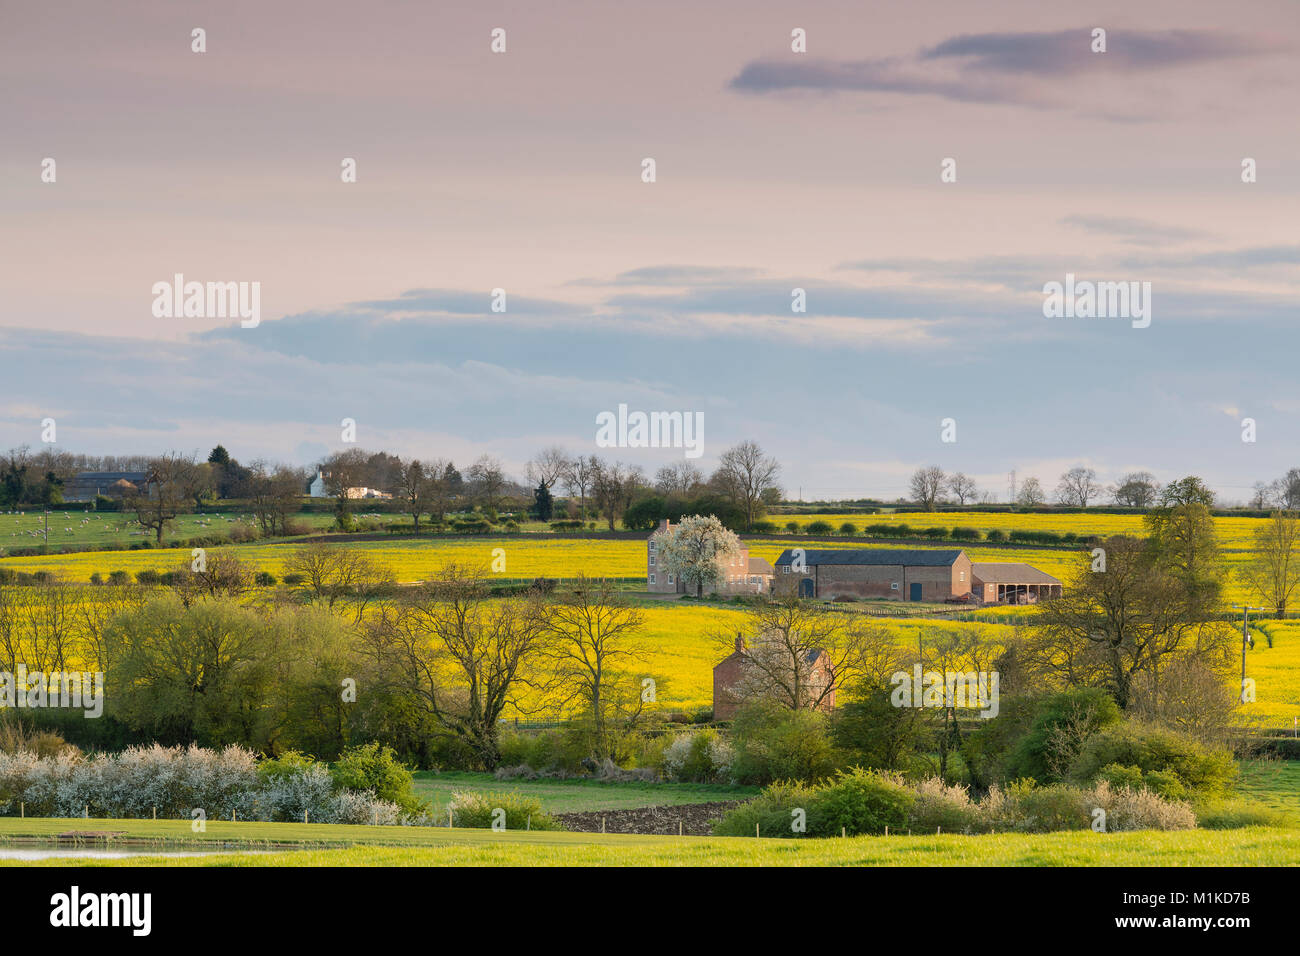 L'image d'un corps de ferme et bâtiments niché dans la campagne du Leicestershire, Angleterre, RU Banque D'Images